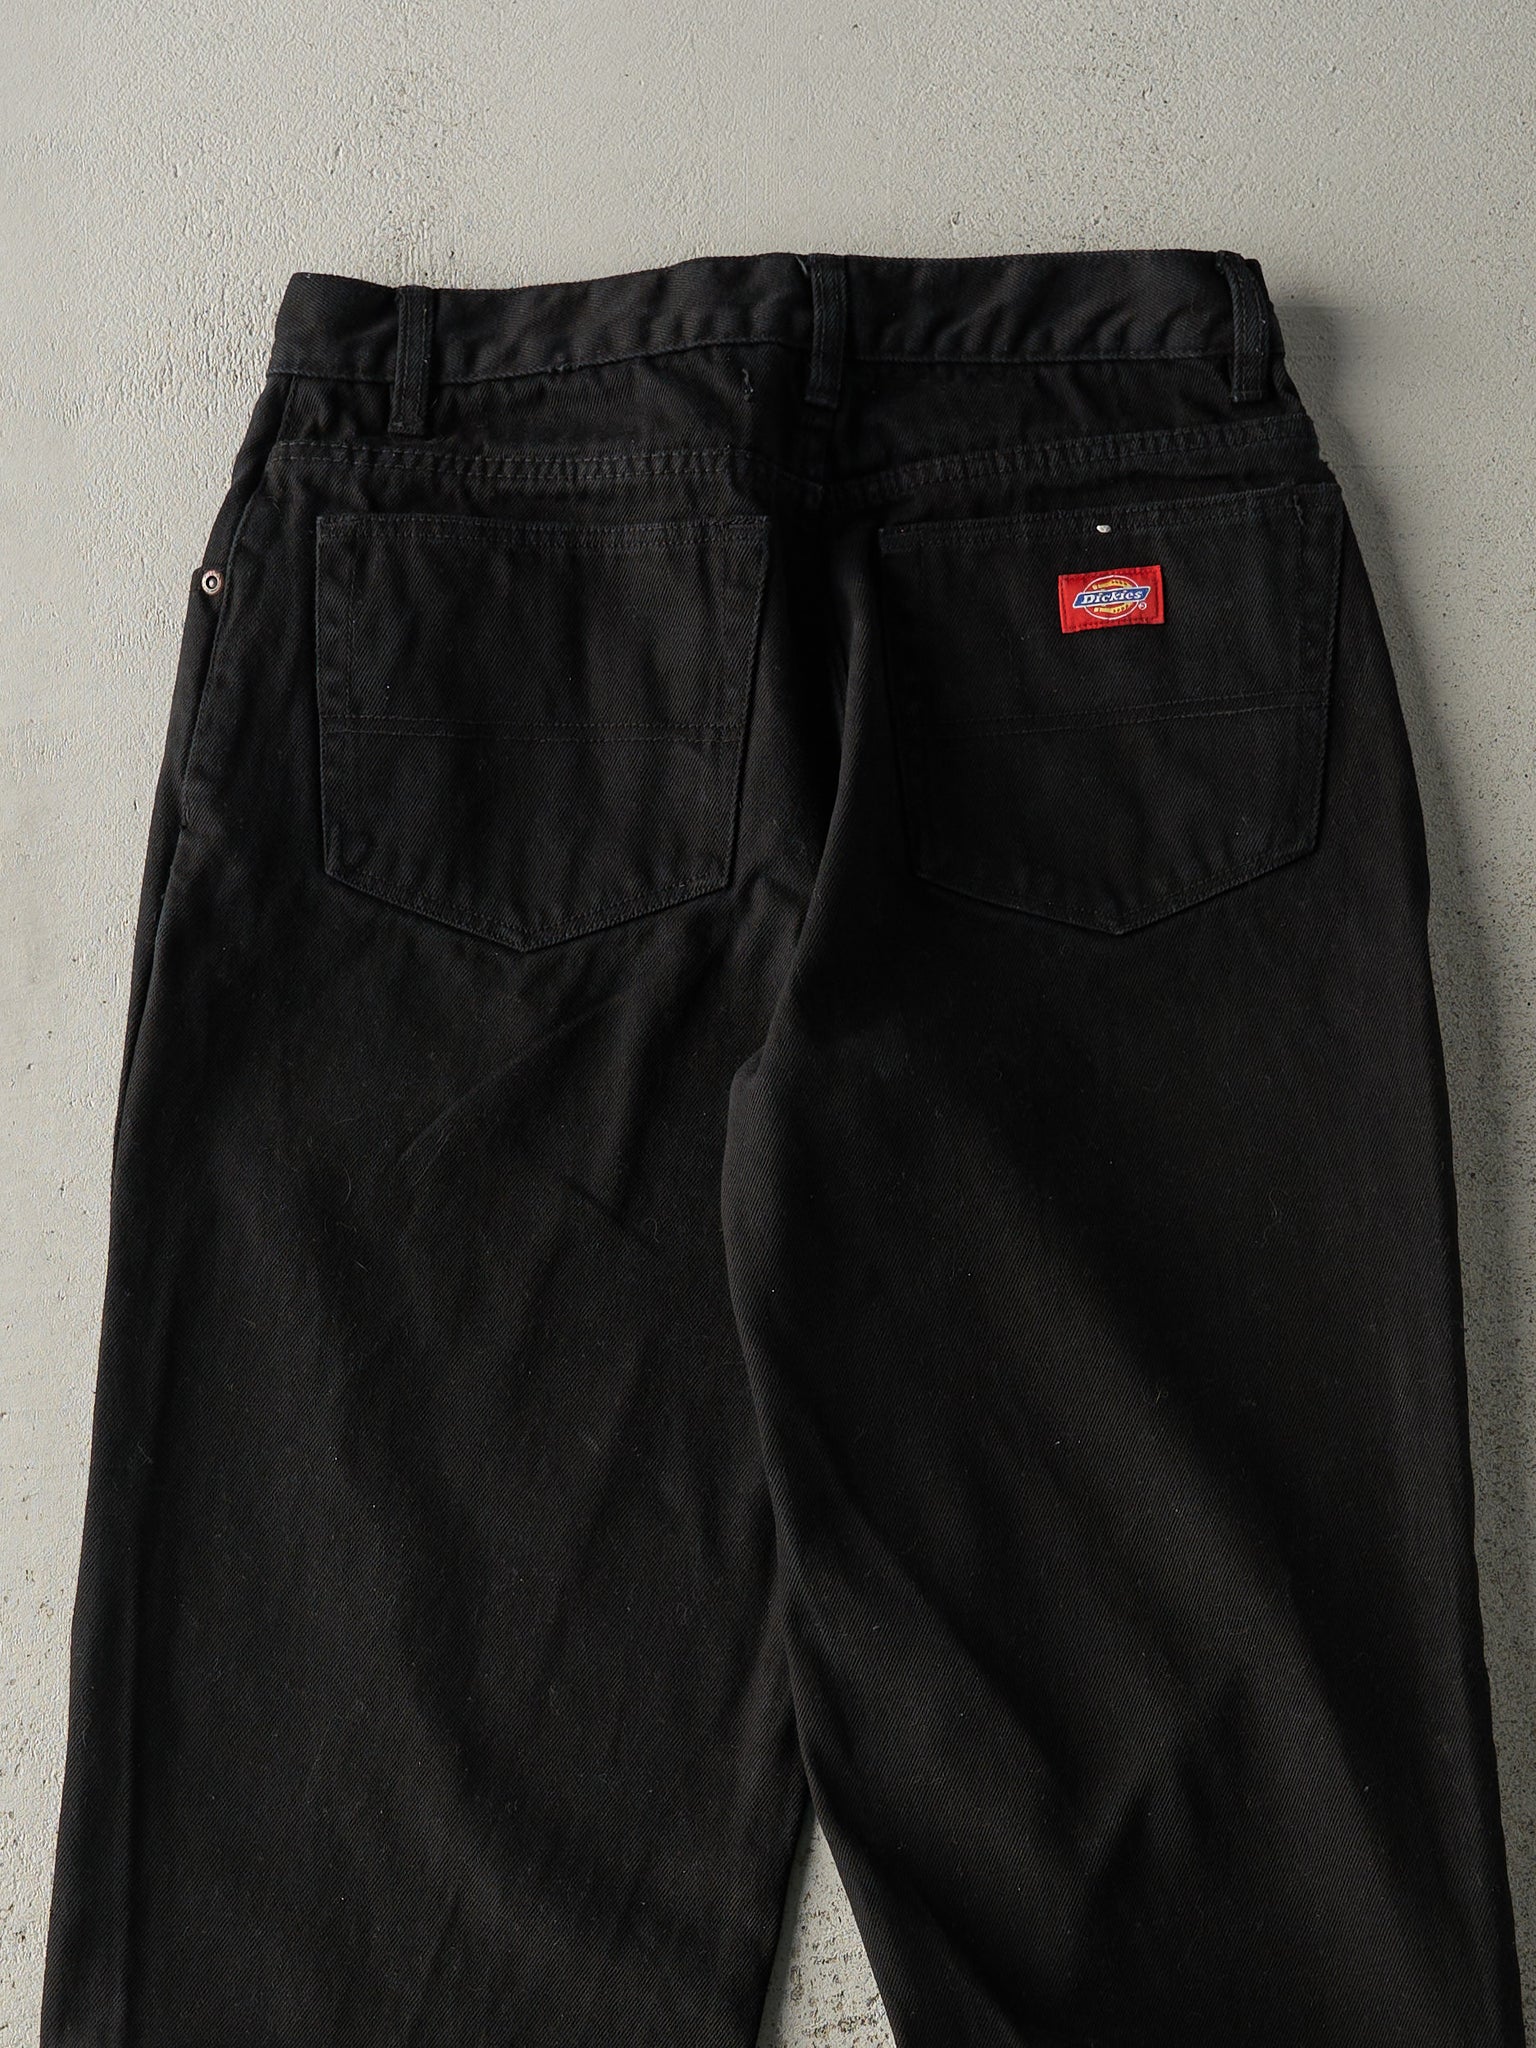 Vintage 90s Black Dickies Denim Pants (30x31.5)